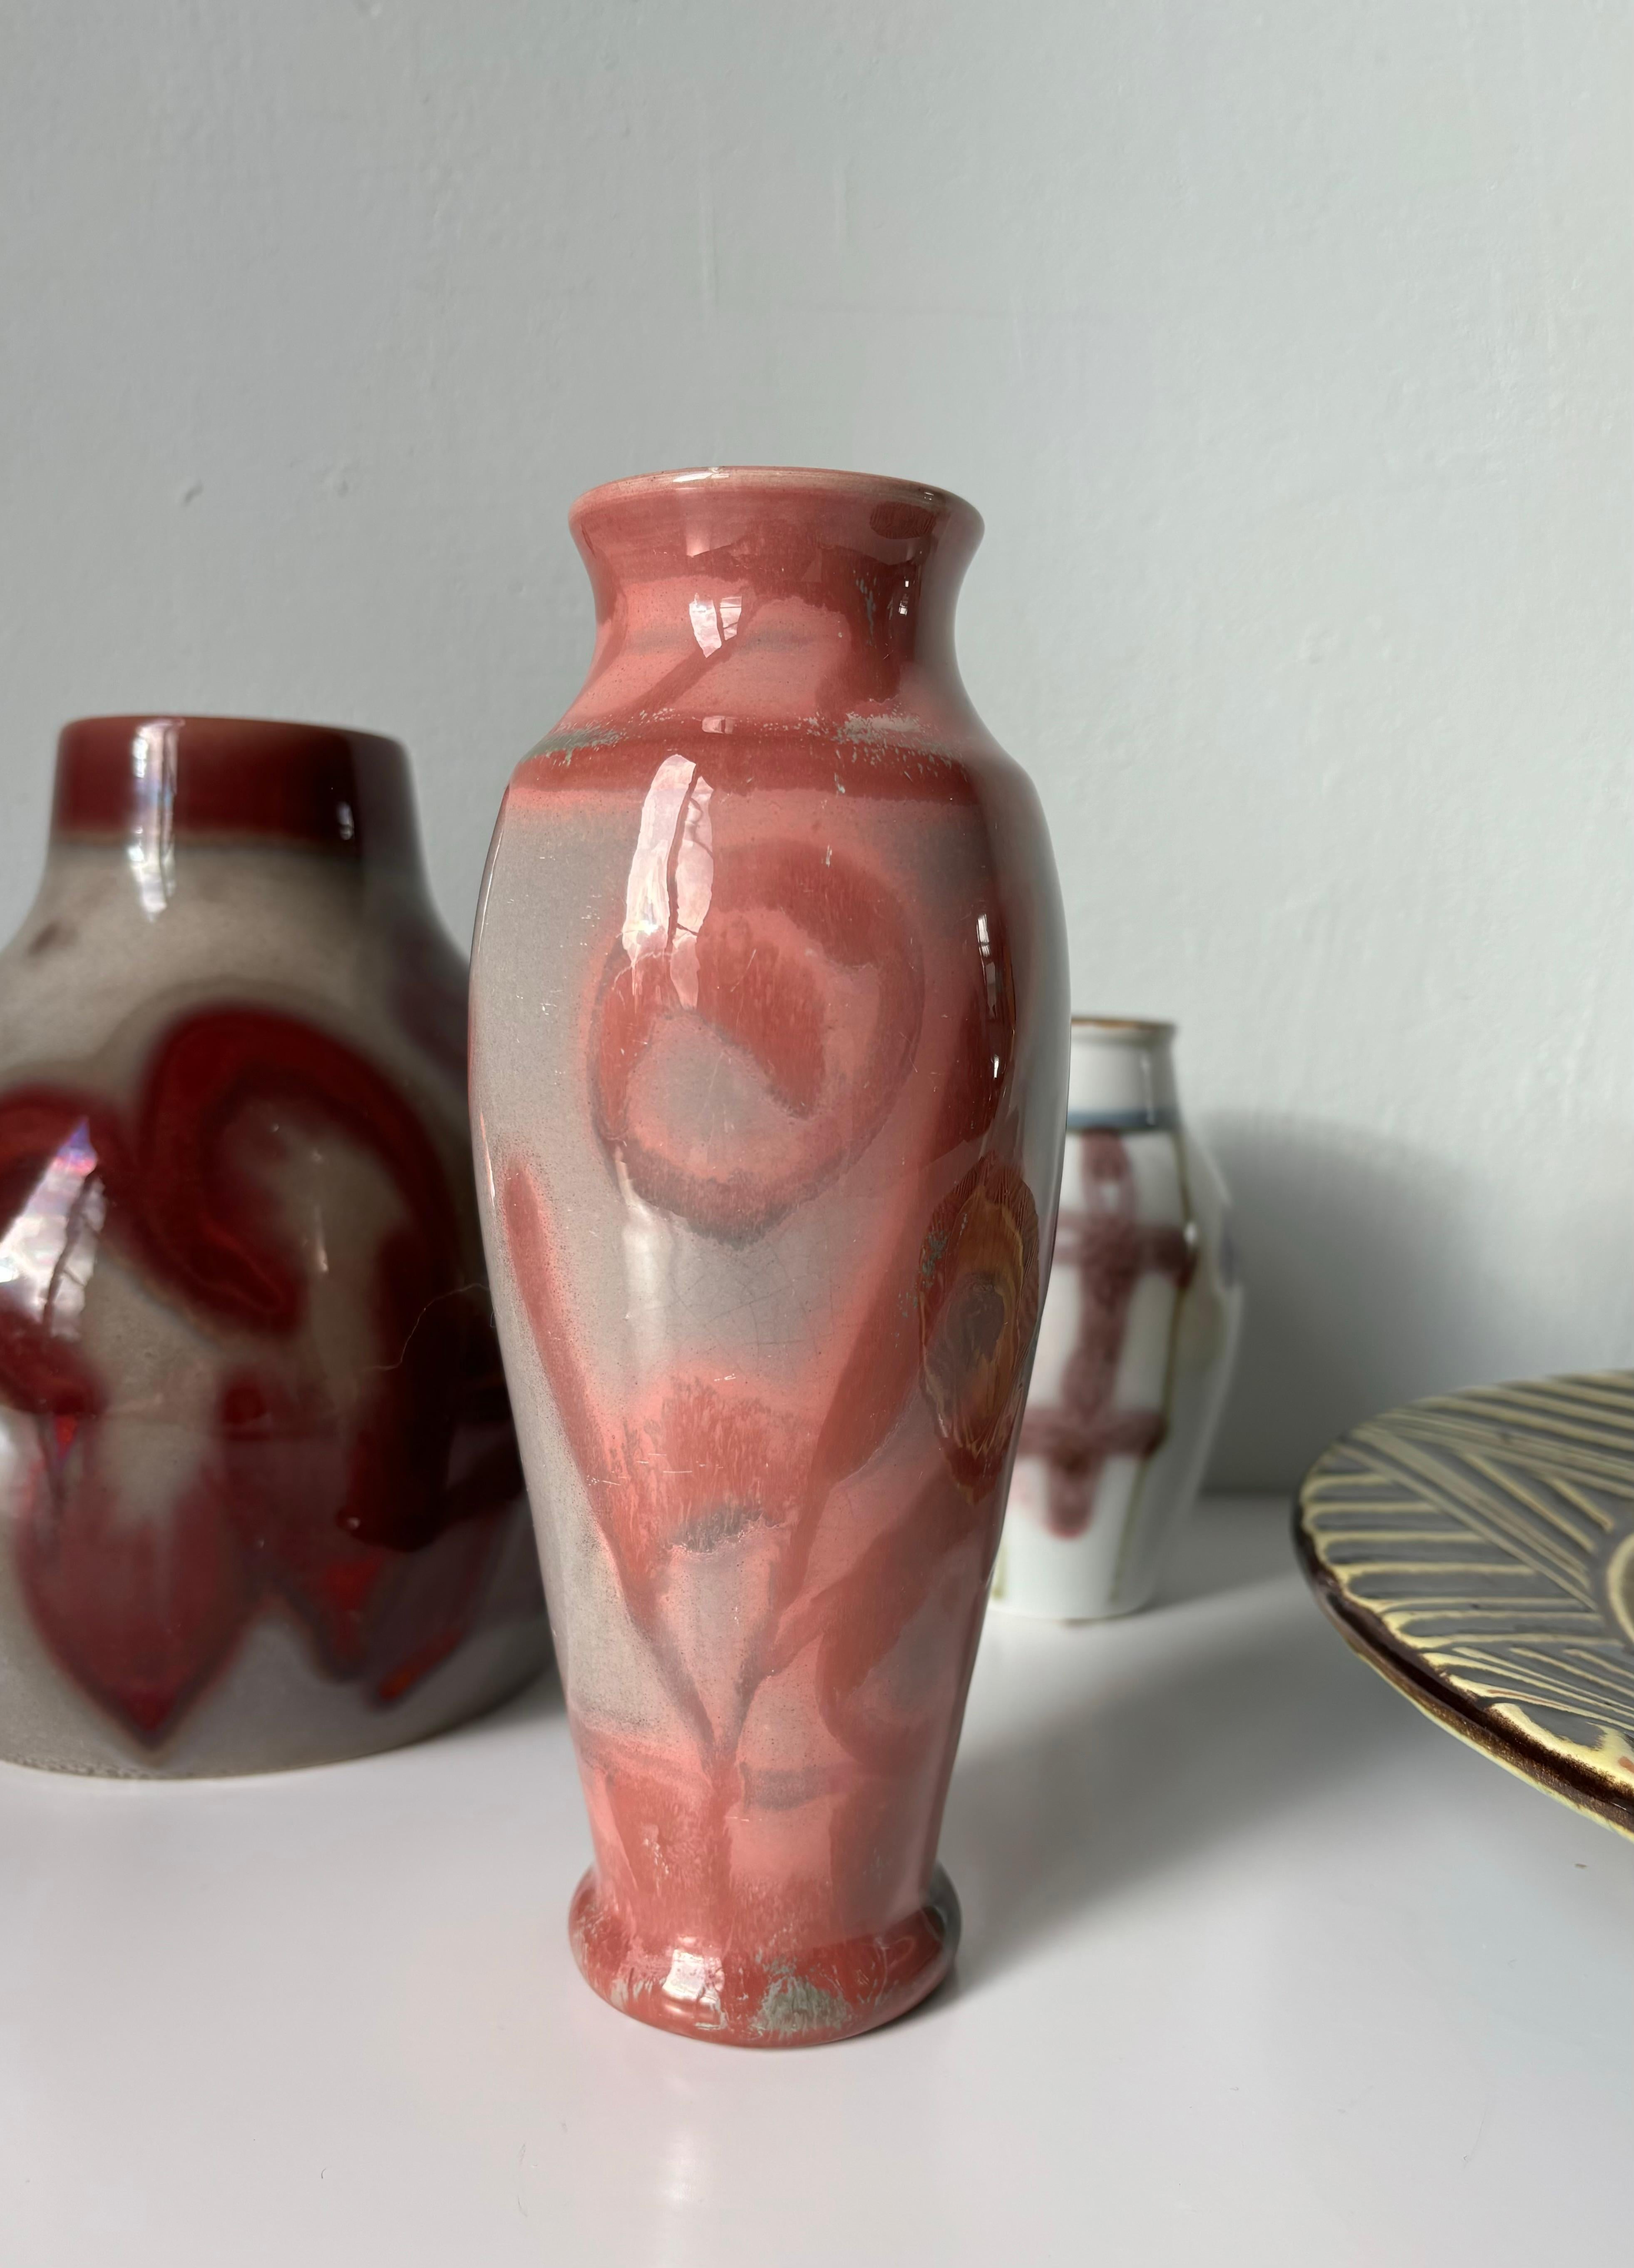 Vase suédois Art nouveau vieux de 100 ans, fabriqué à la main par l'artiste Edgar Böckman dans les années 1920. L'émail lustré gris chaud, rose et magenta recouvre la forme élancée de grandes décorations organiques. Signé sous la base. Vintage AGE